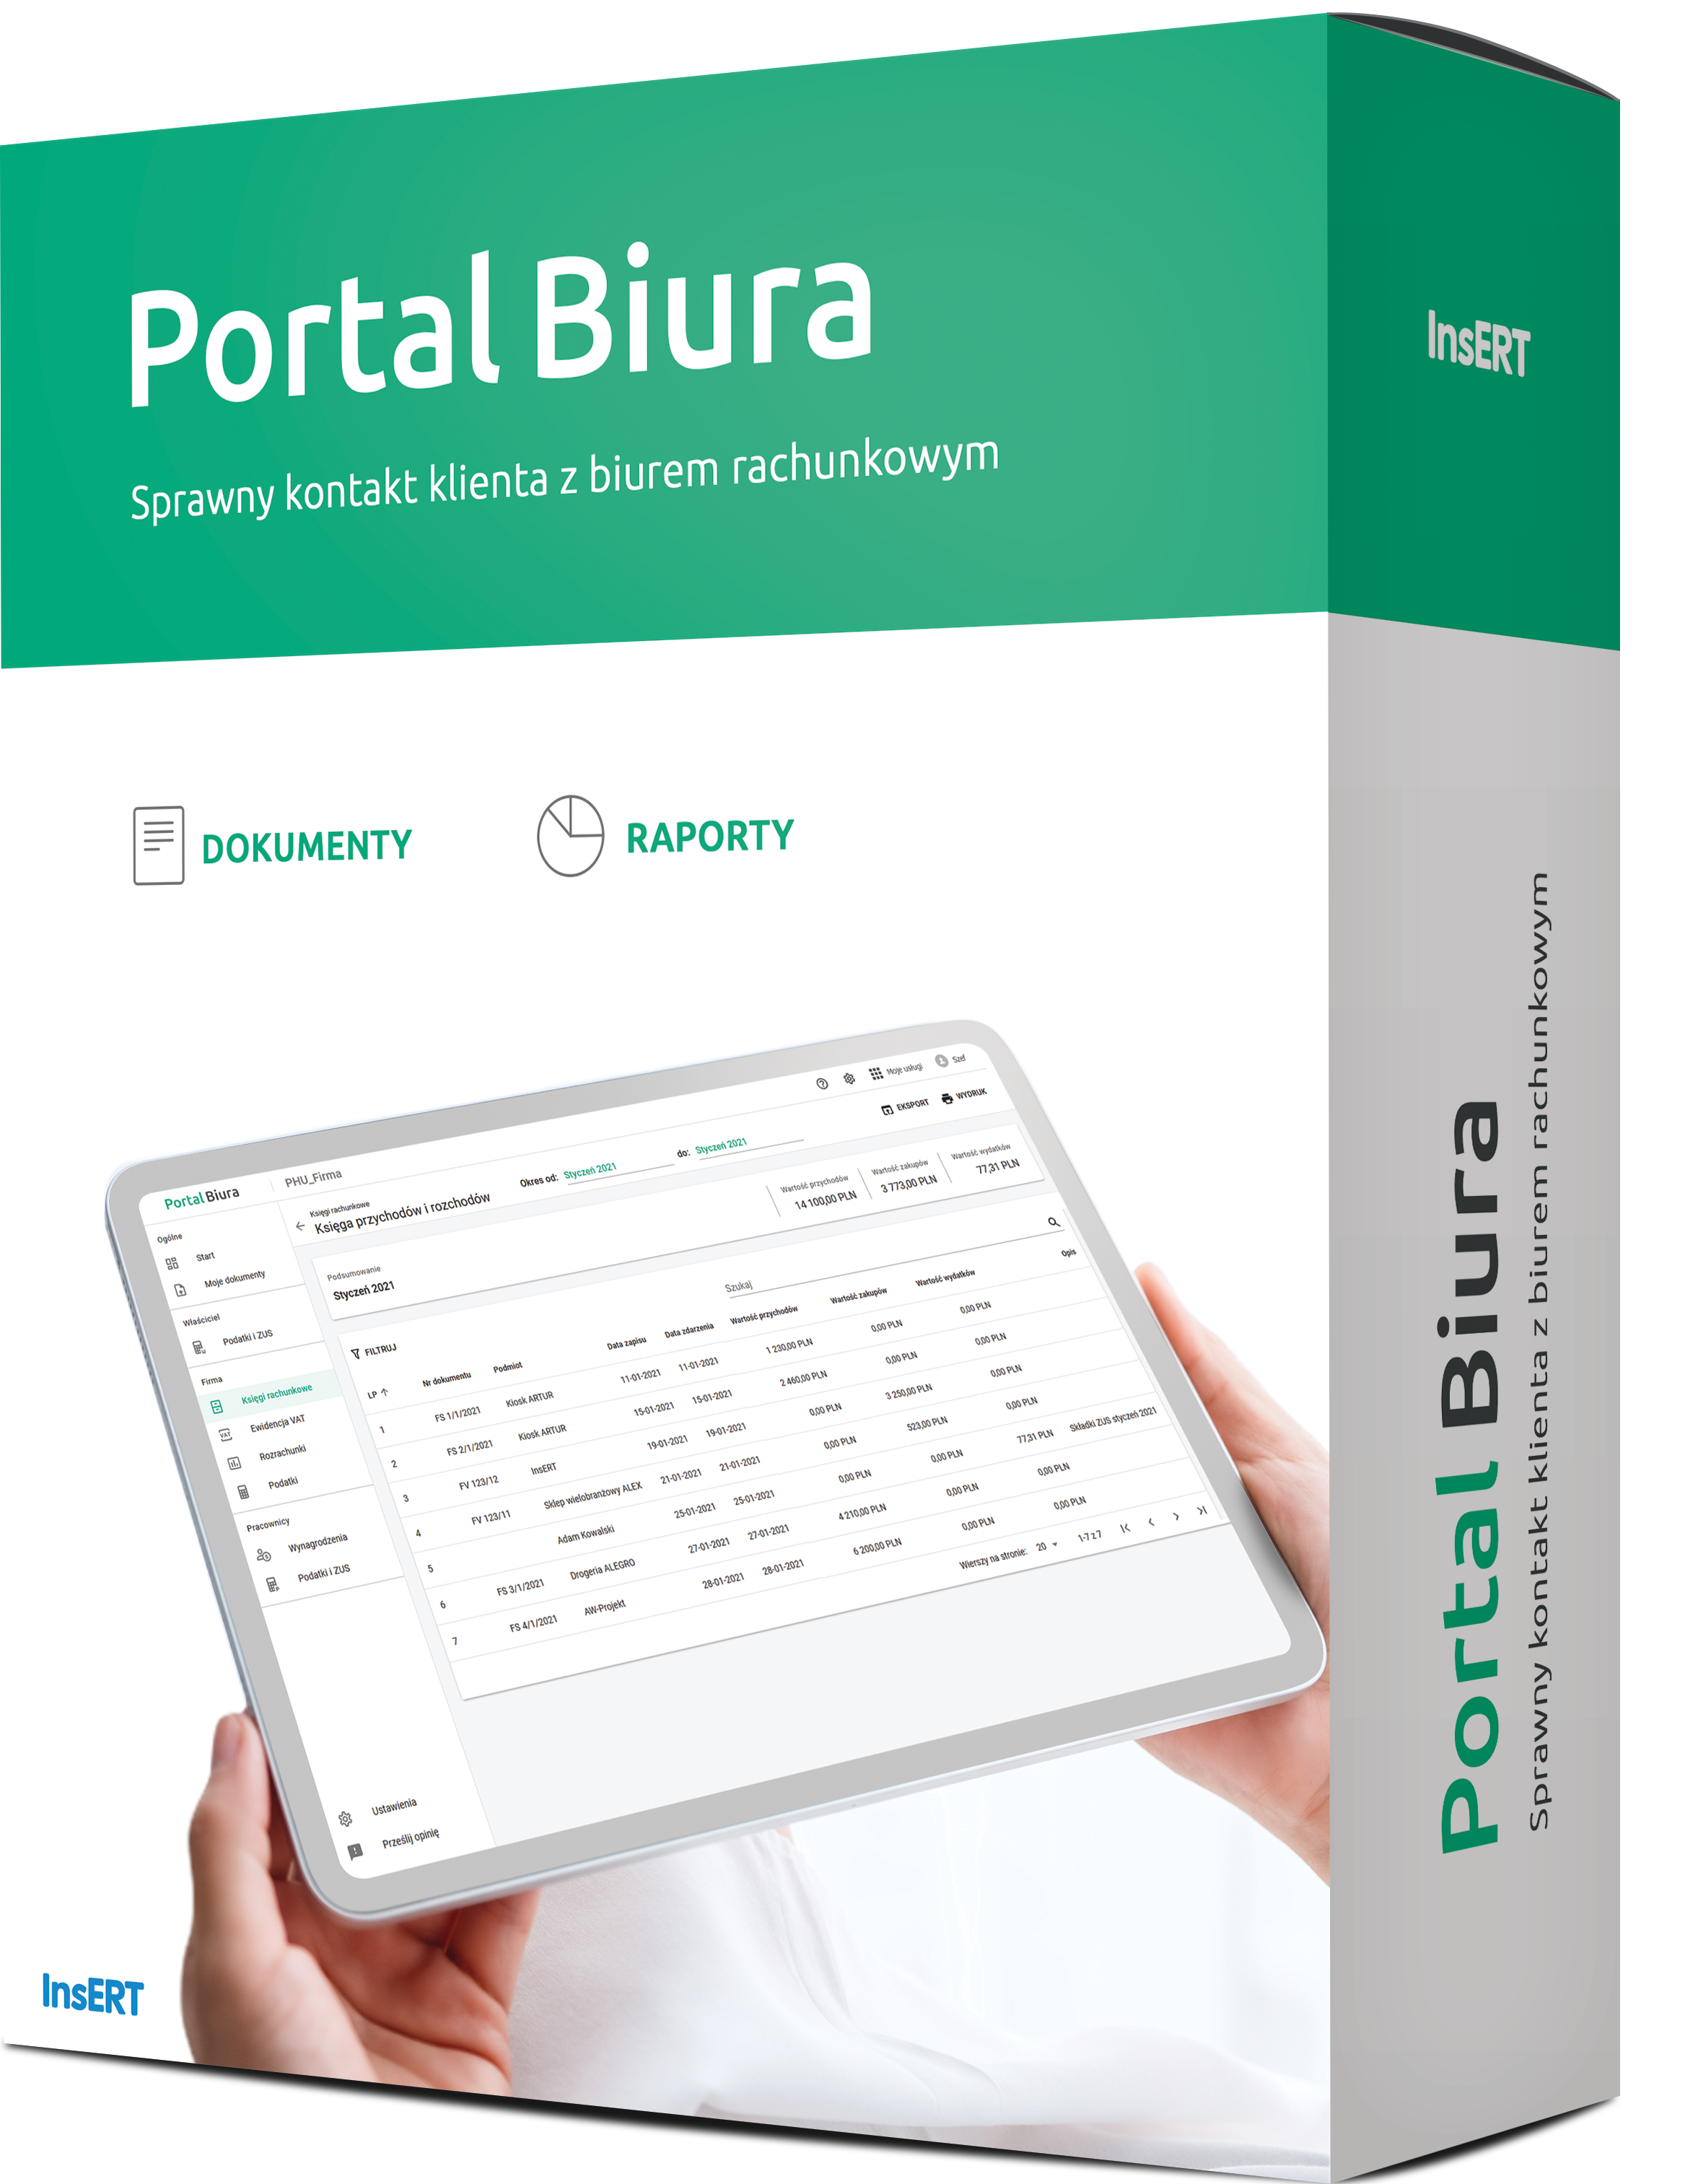 Portal Biura: Sprawny kontakt klienta z Biurem Rachunkowym